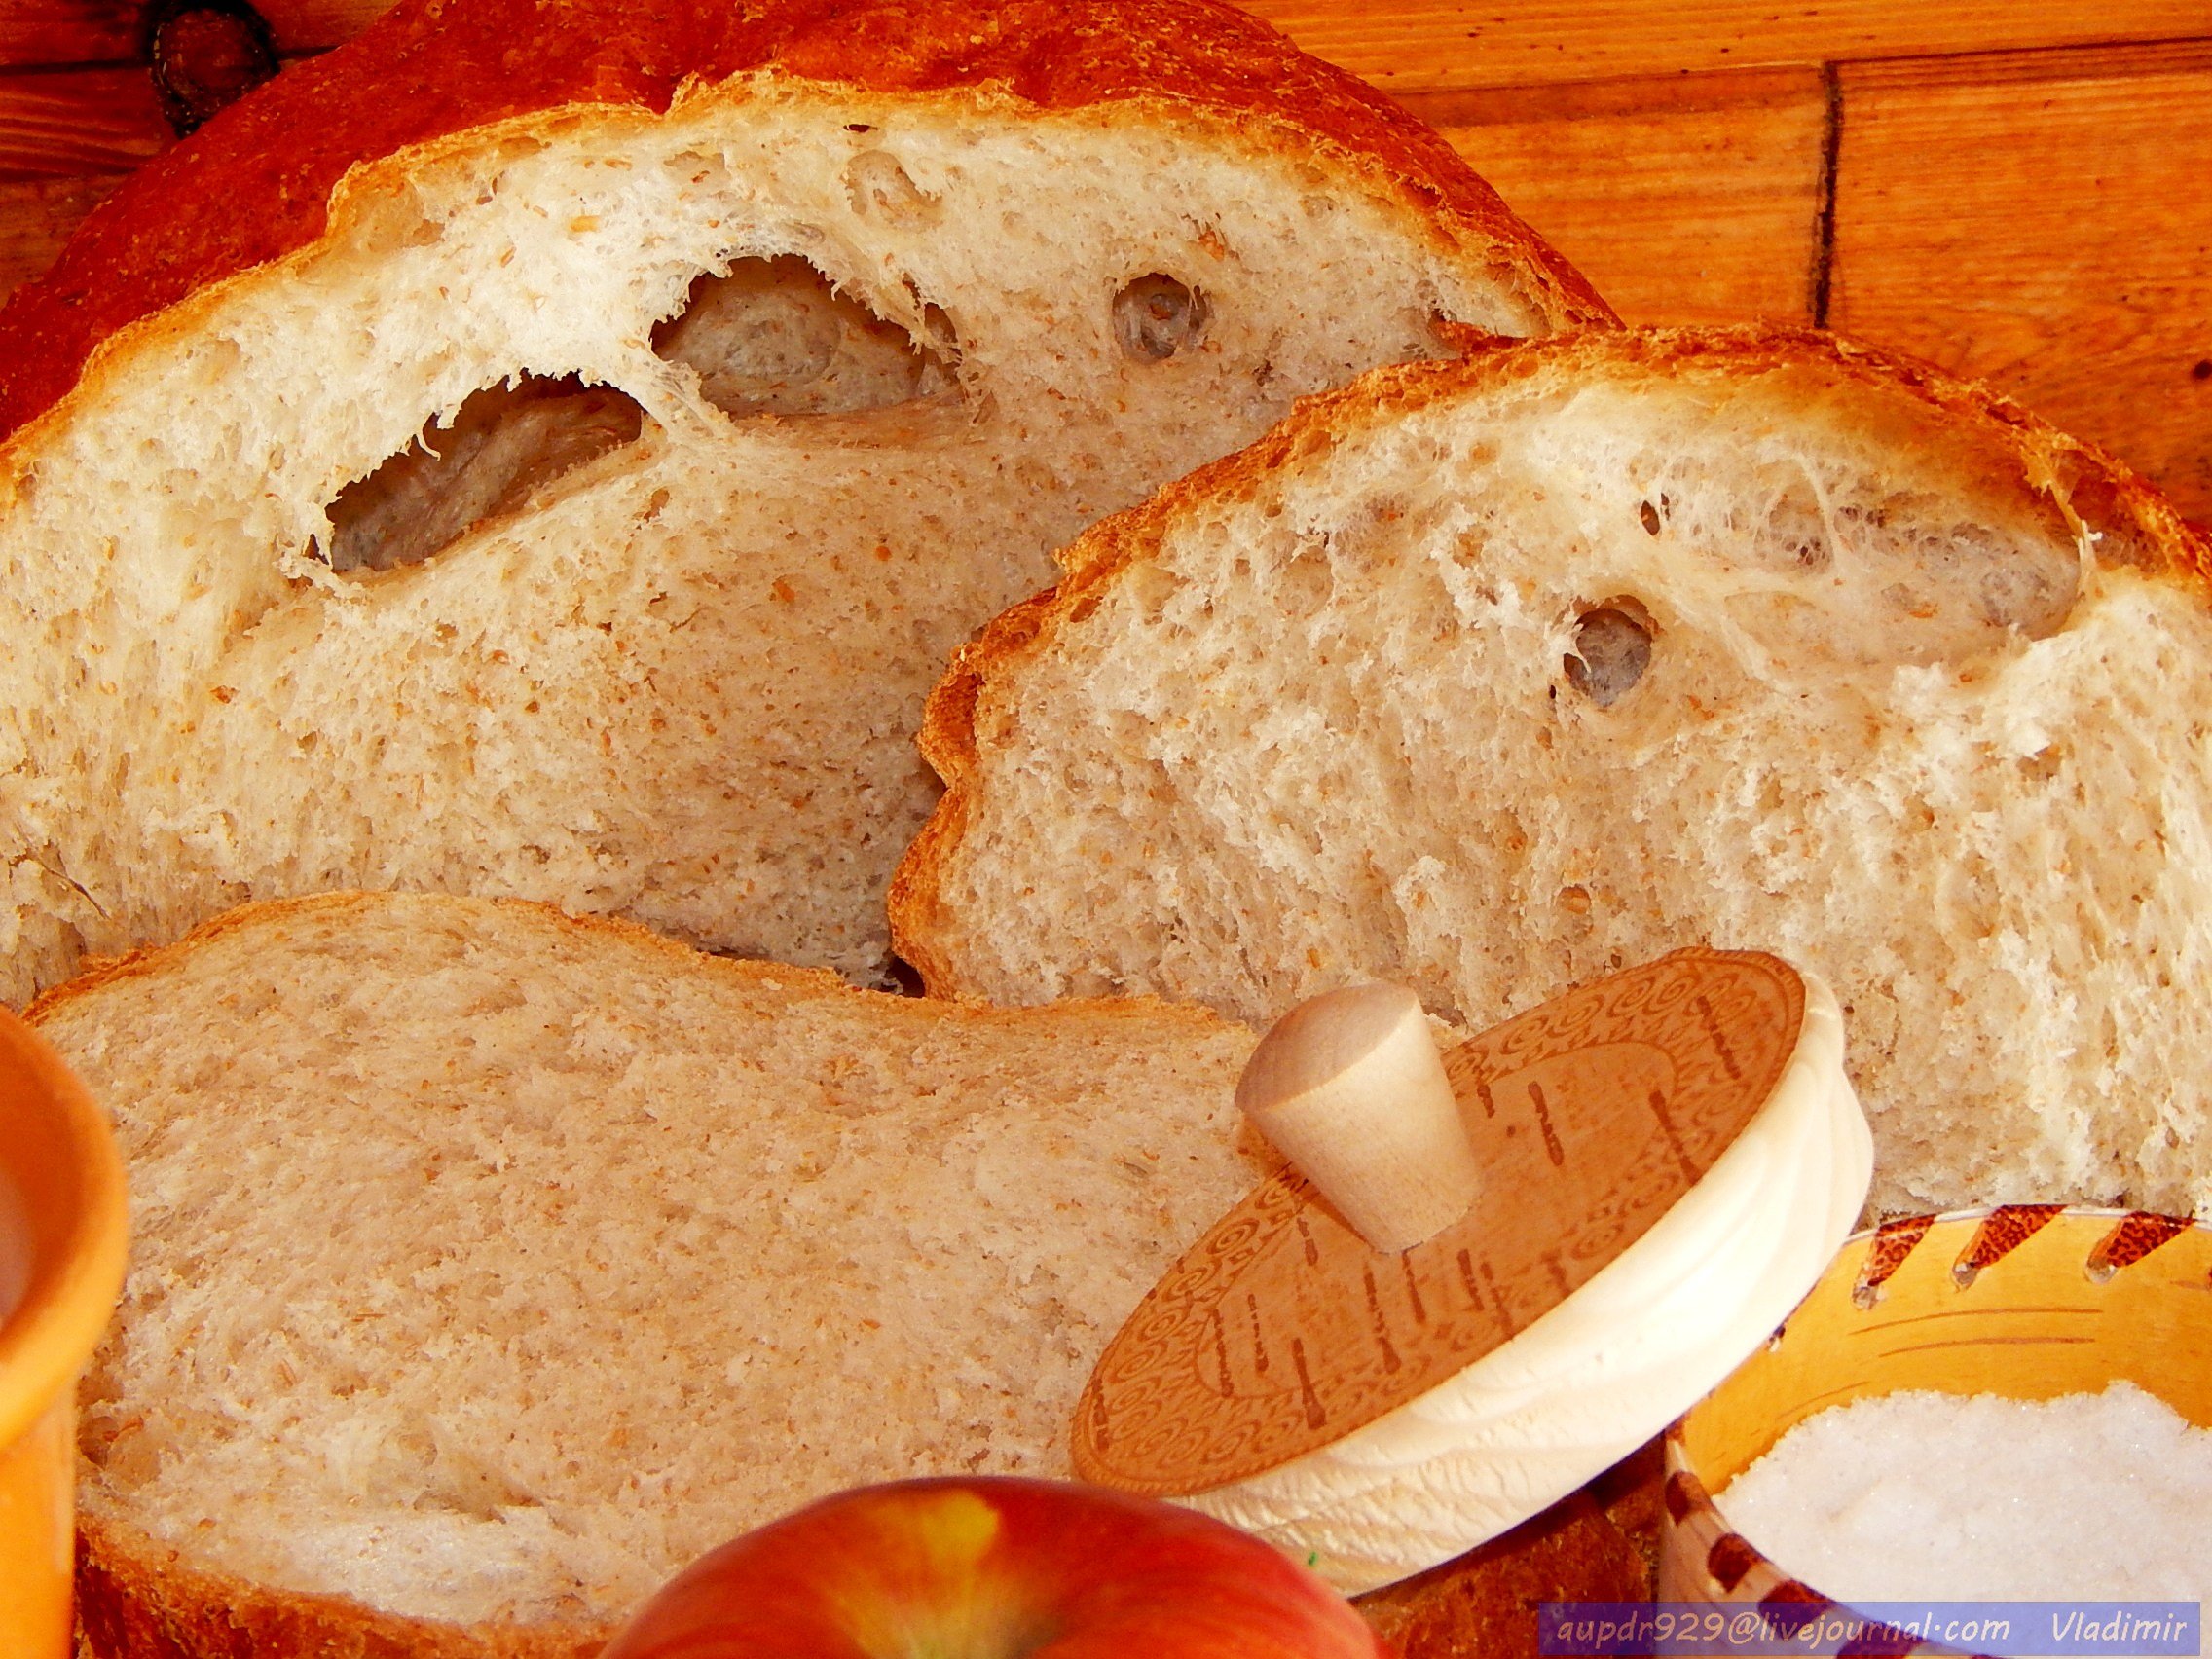 Что внутри хлеба. Хлеб. Хлеб с дырочками. Хлеб на столе. Хлеб в разрезе.